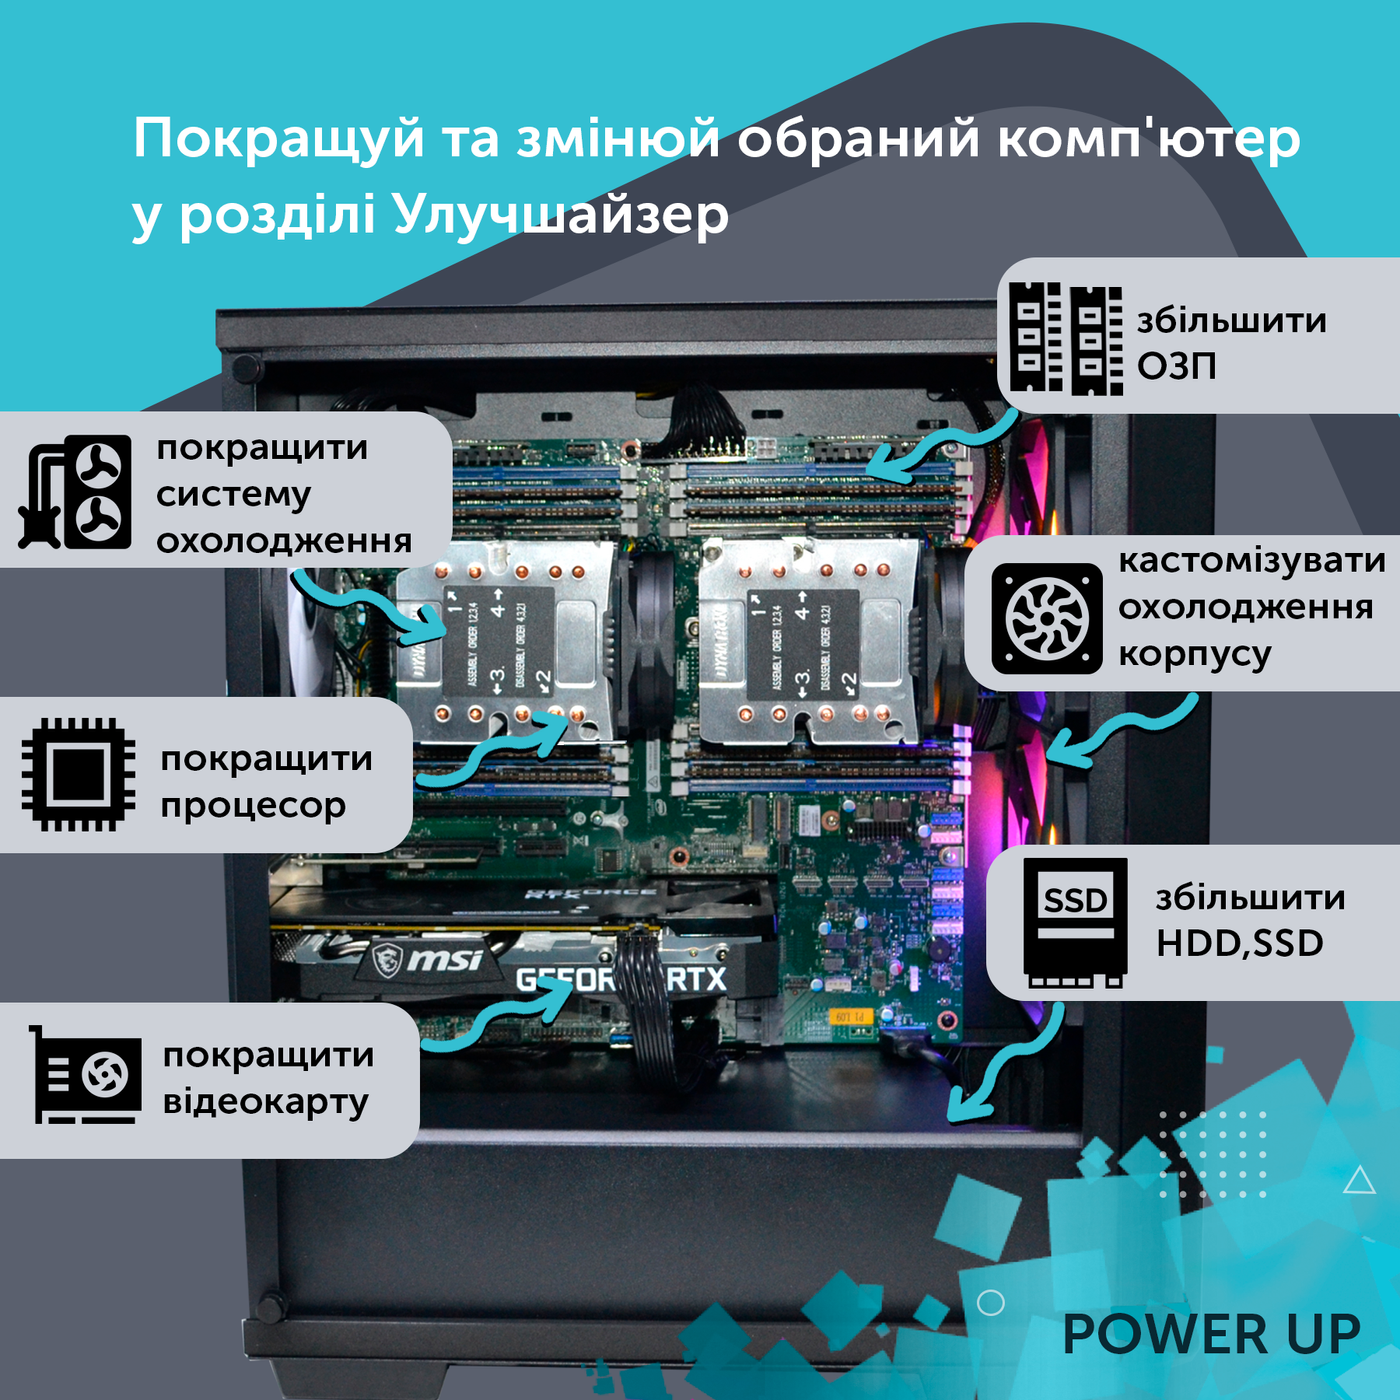 Двухпроцессорная рабочая станция PowerUp #140 Xeon E5 2680 v4 x2/64 GB/HDD 1 TB/SSD 256GB/NVIDIA Quadro M2000 4GB